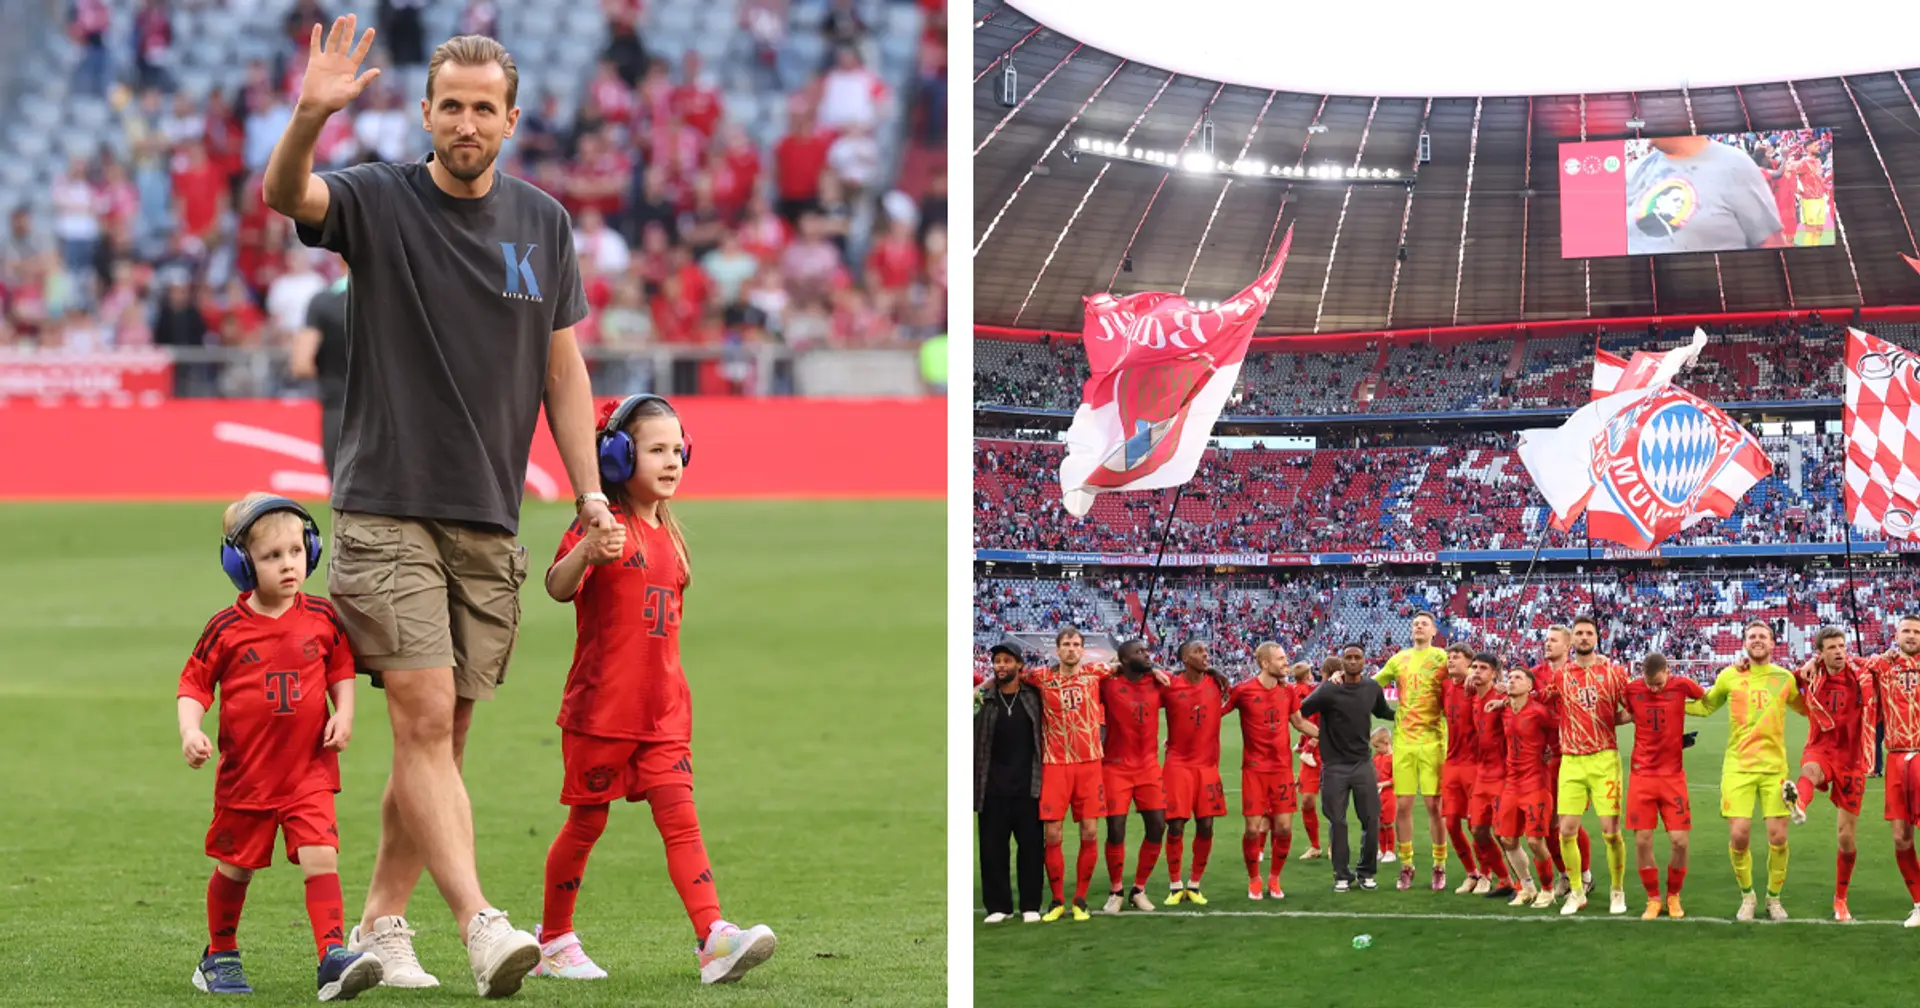 "Fans haben uns das Gefühl gegeben, zu Hause zu sein": Kane bedankt sich bei Bayern-Anhängern für Unterstützung